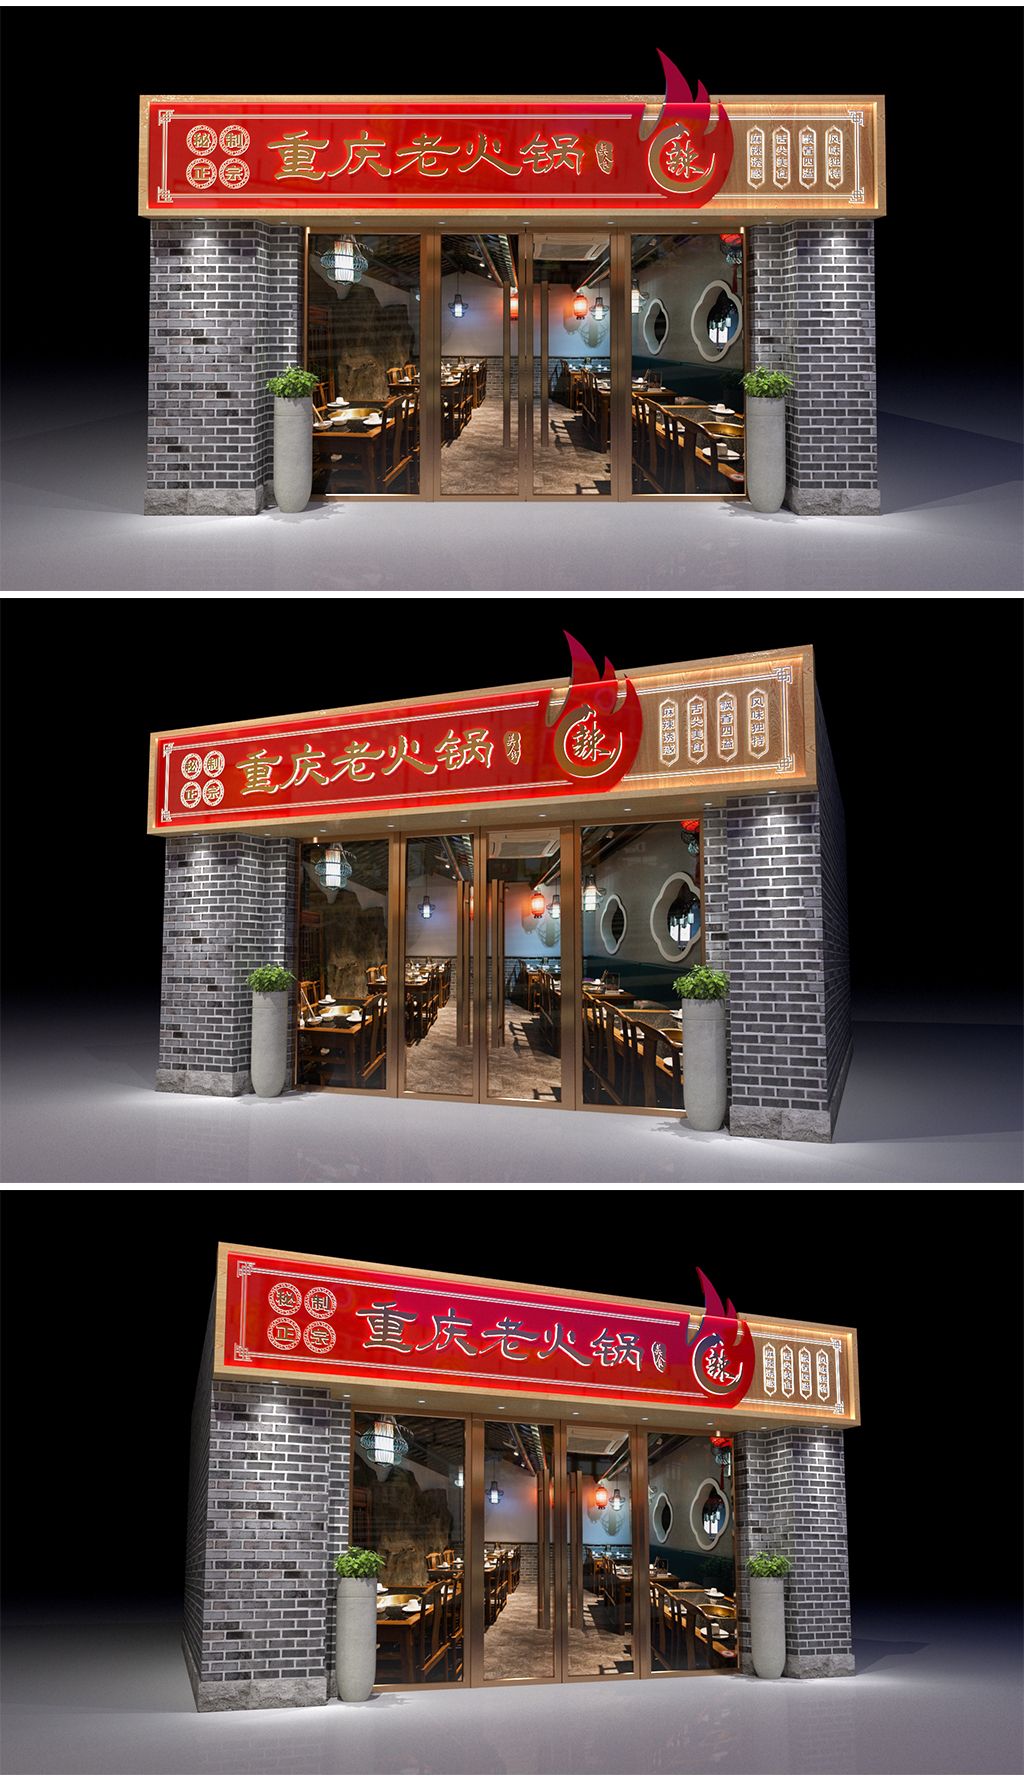 做快餐的你也要异于他人——快餐店设计_上海赫筑餐饮空间设公司